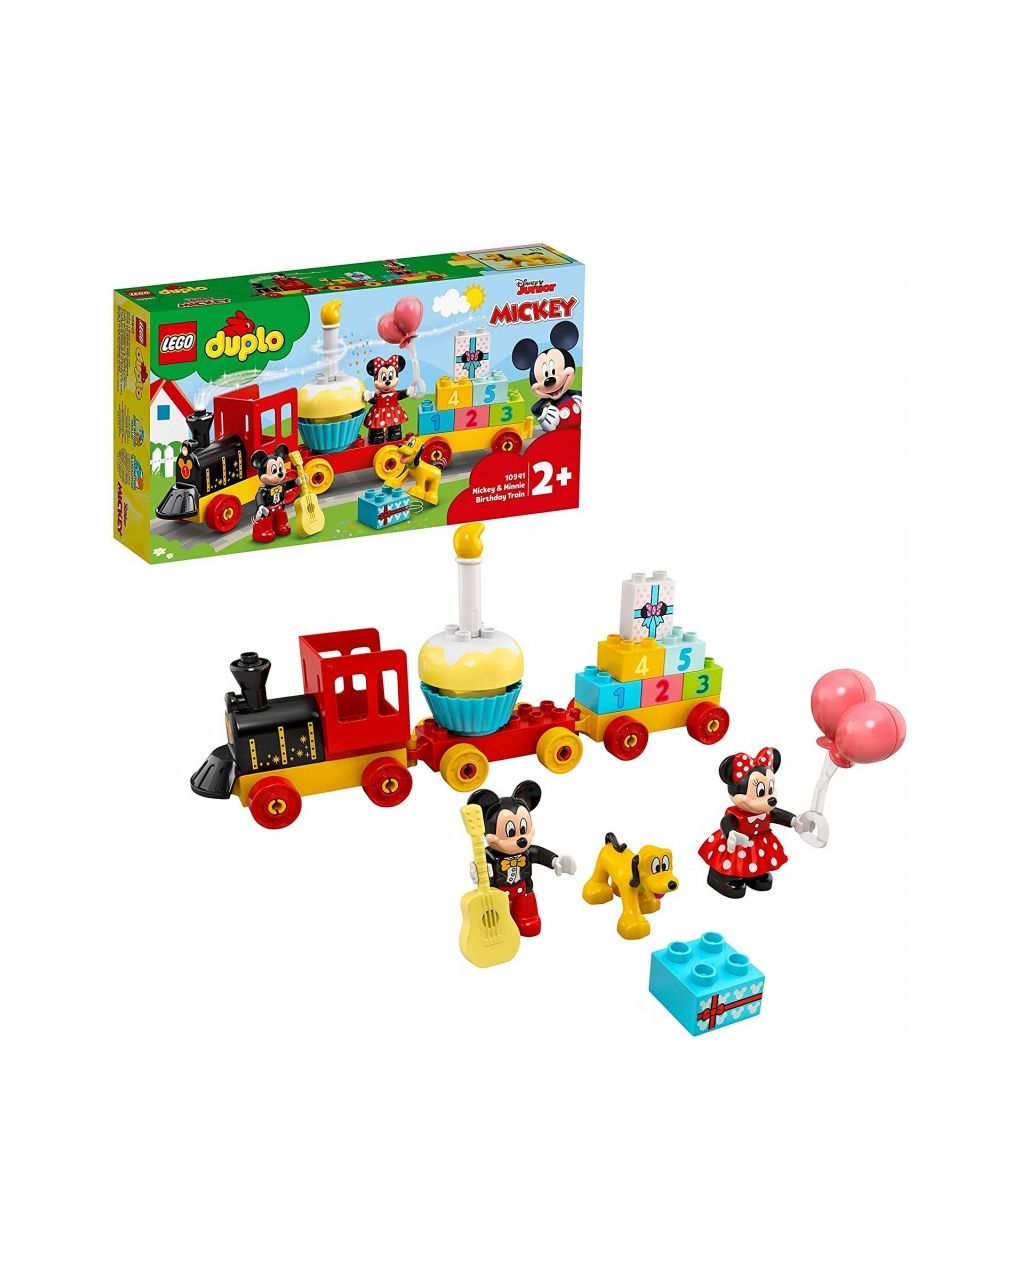 Lego duplo disney mickey and minnie birthday train τρένο γενεθλίων του μίκυ και της μίννι 10941 - LEGO DUPLO